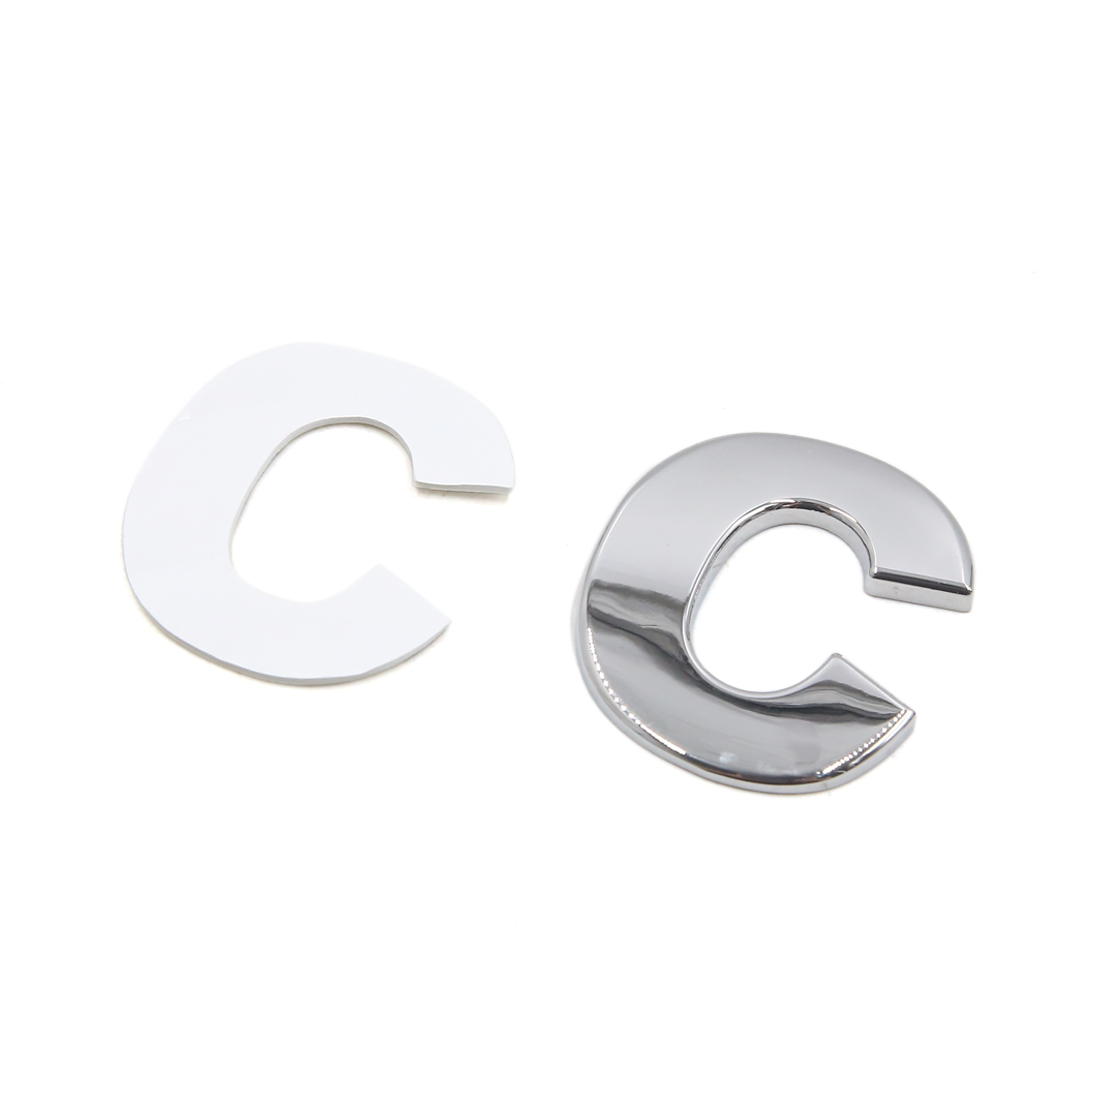 Unique Bargains Silver Tone Metal C Letter Shaped Alphabet Sticker Emblem Badge Decals for Car